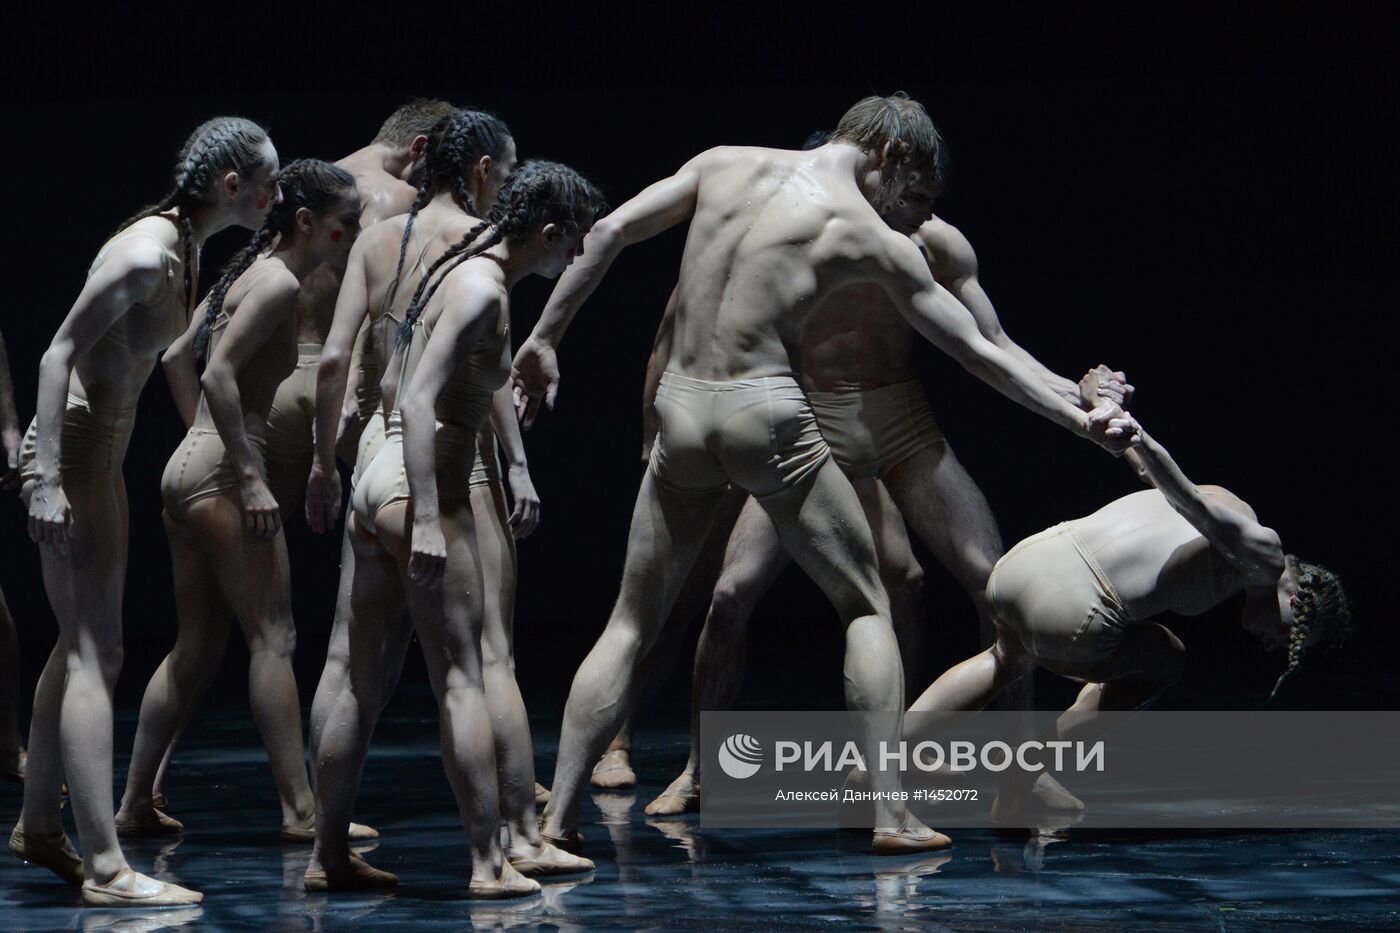 XII Международный фестиваль балета Dance open в Санкт-Петербурге